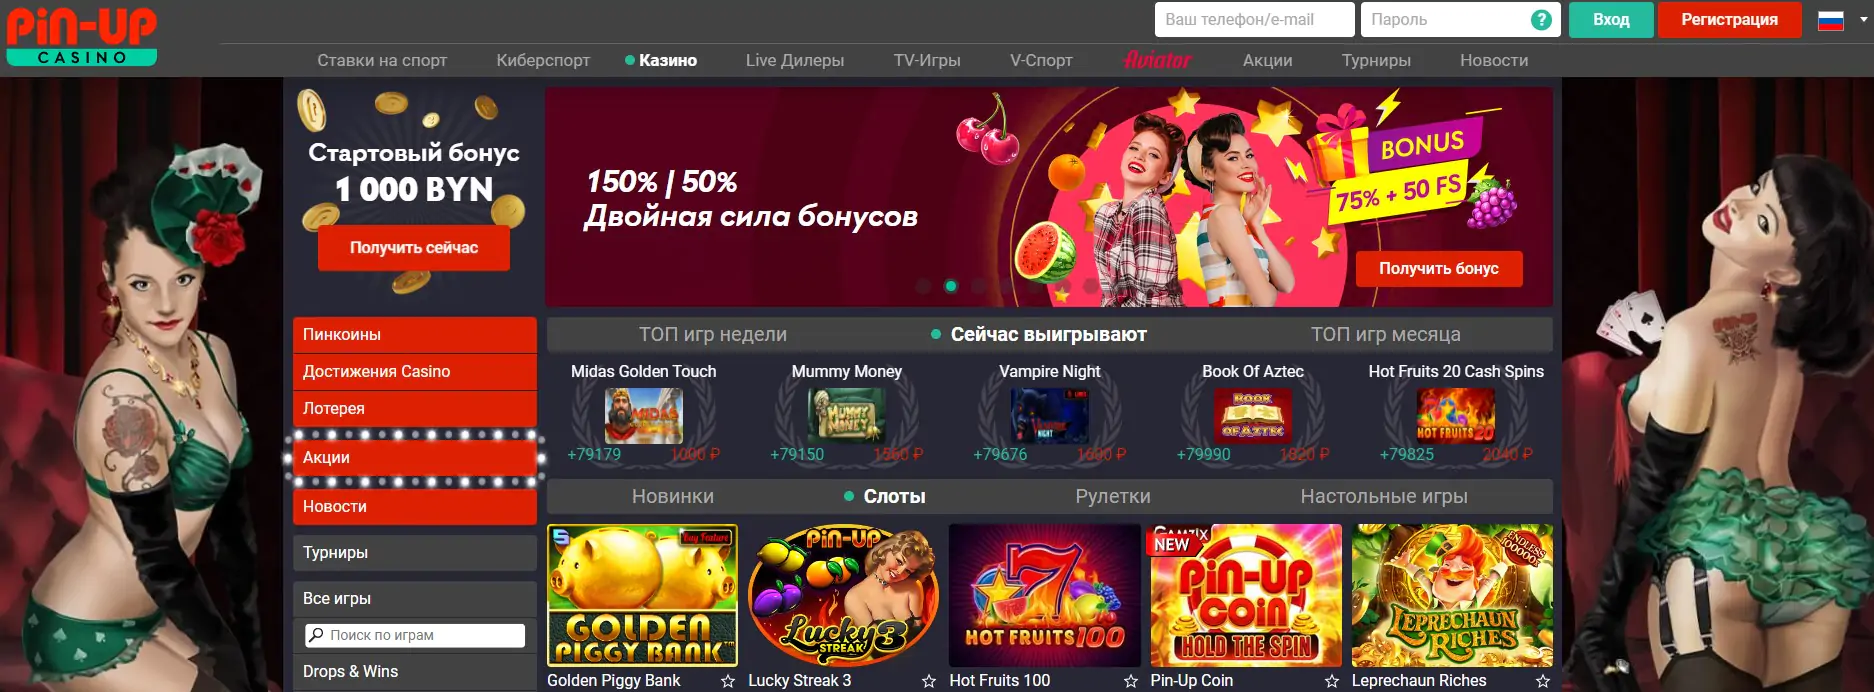 официальный сайт пинап казино